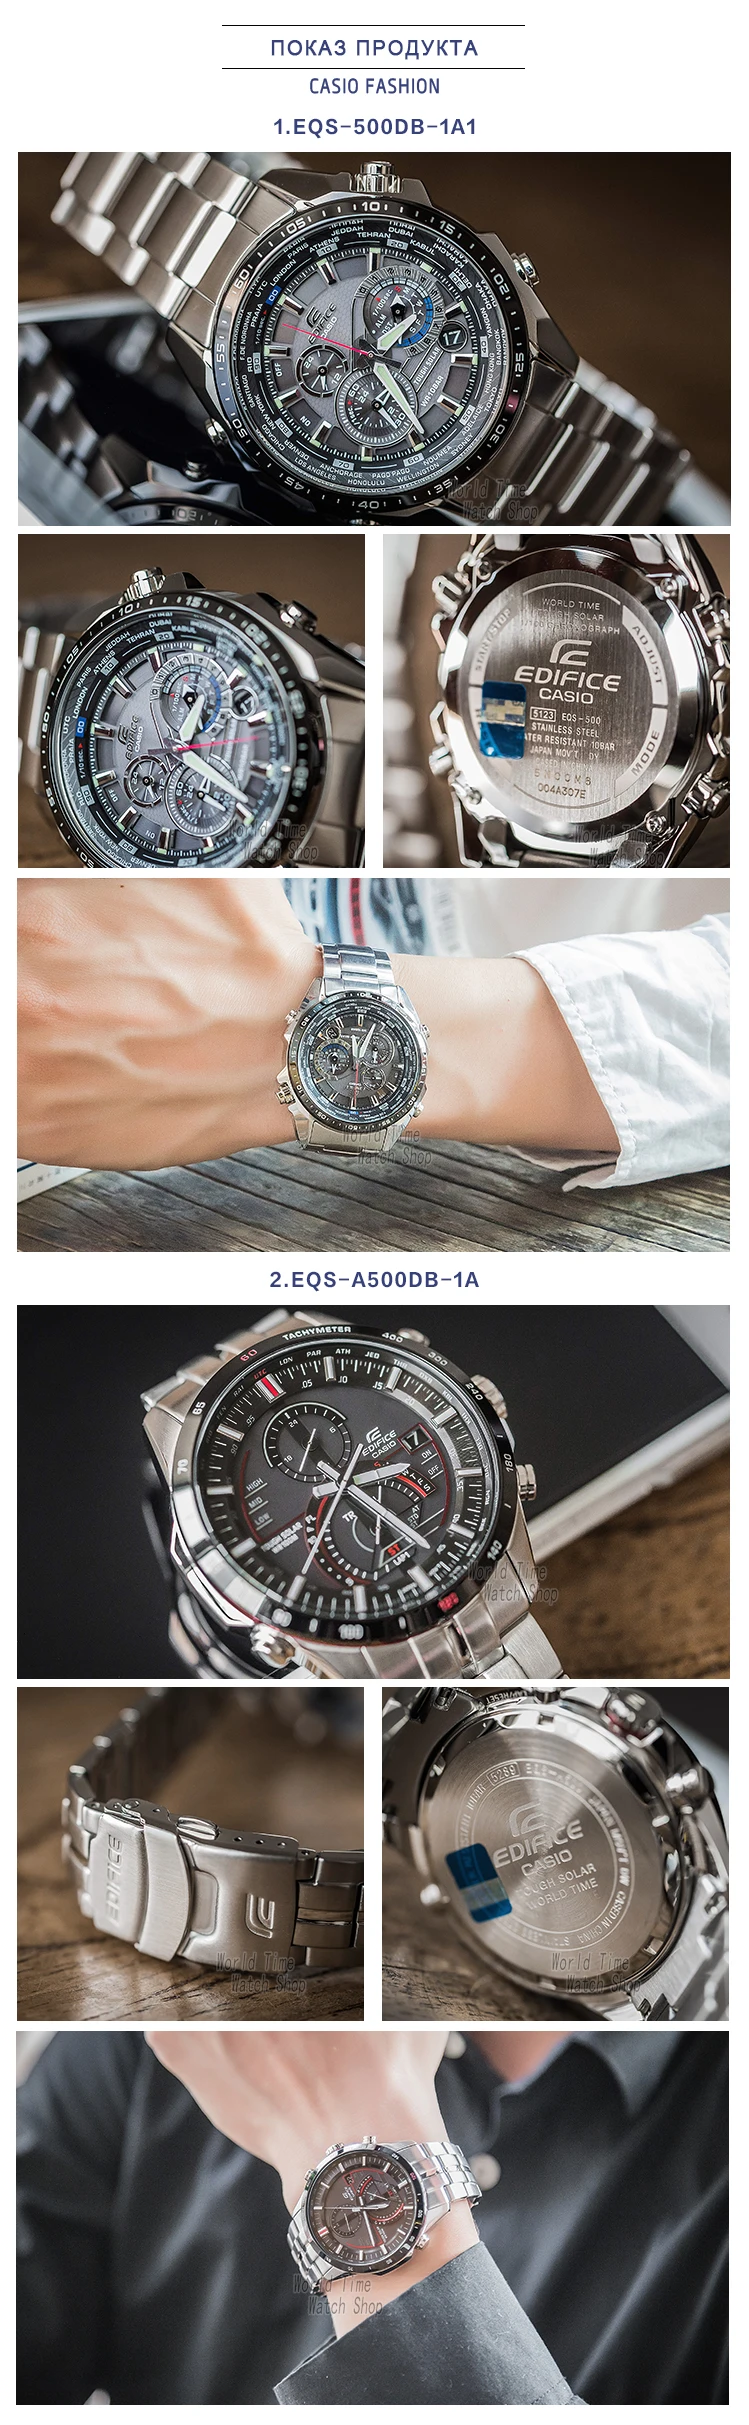 Casio Часы Edifice Мужские кварцевые спортивные часы бизнес модные часы EQS-500DB EQS-A500DB